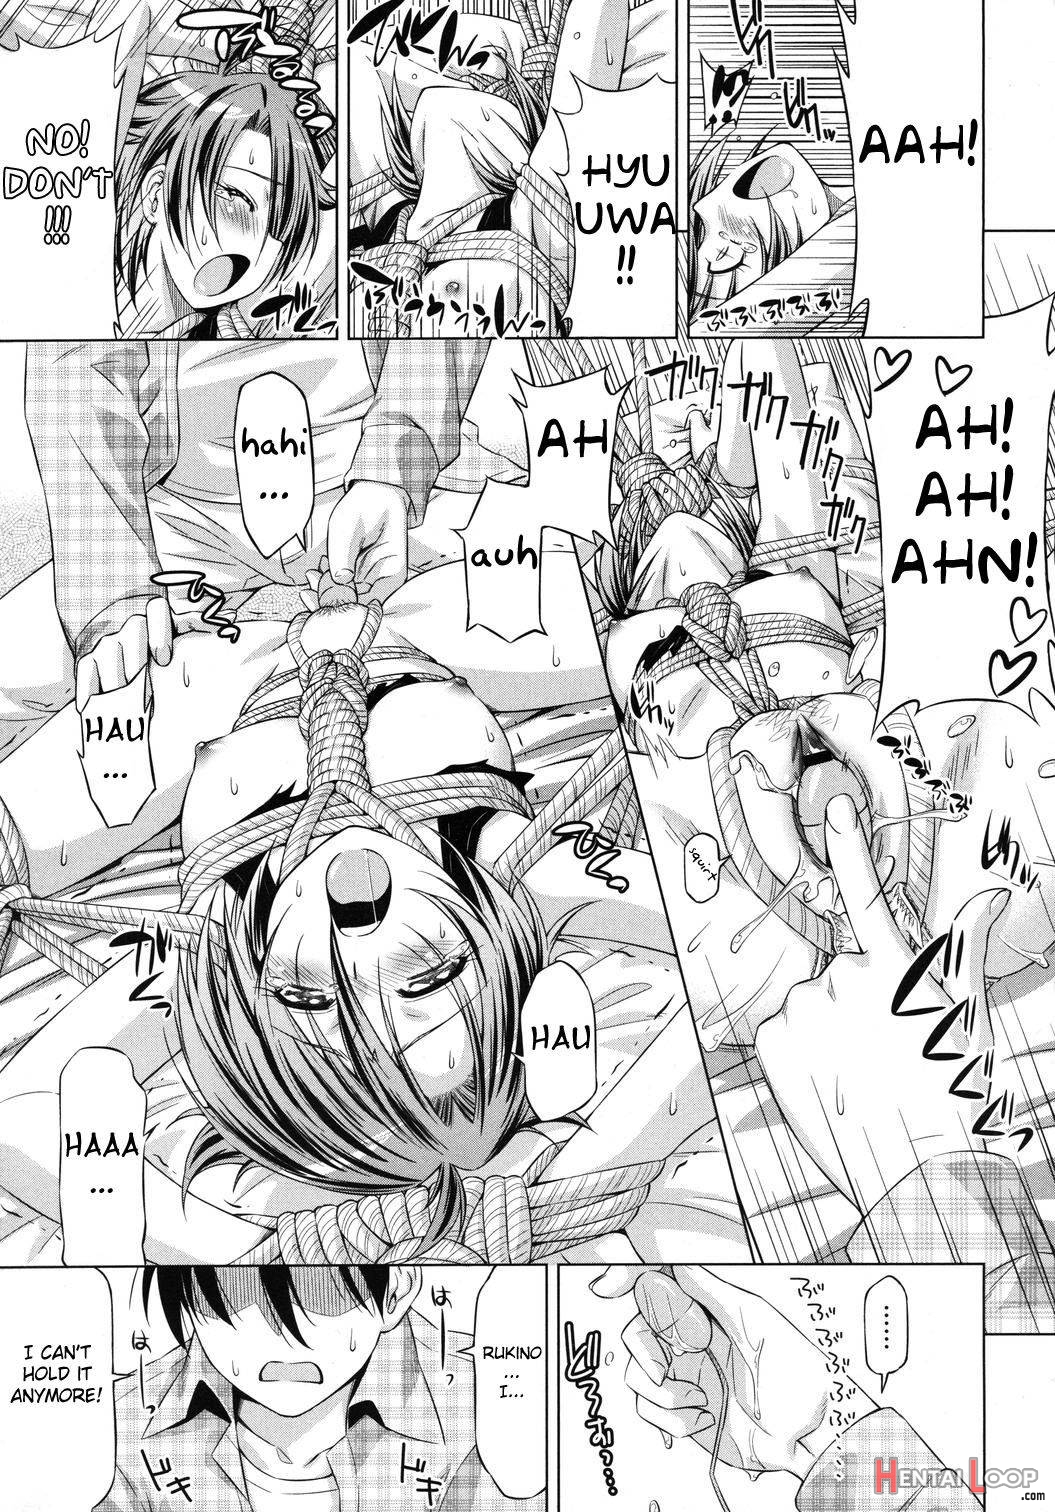 Rukino Versus Kei-niichan page 15